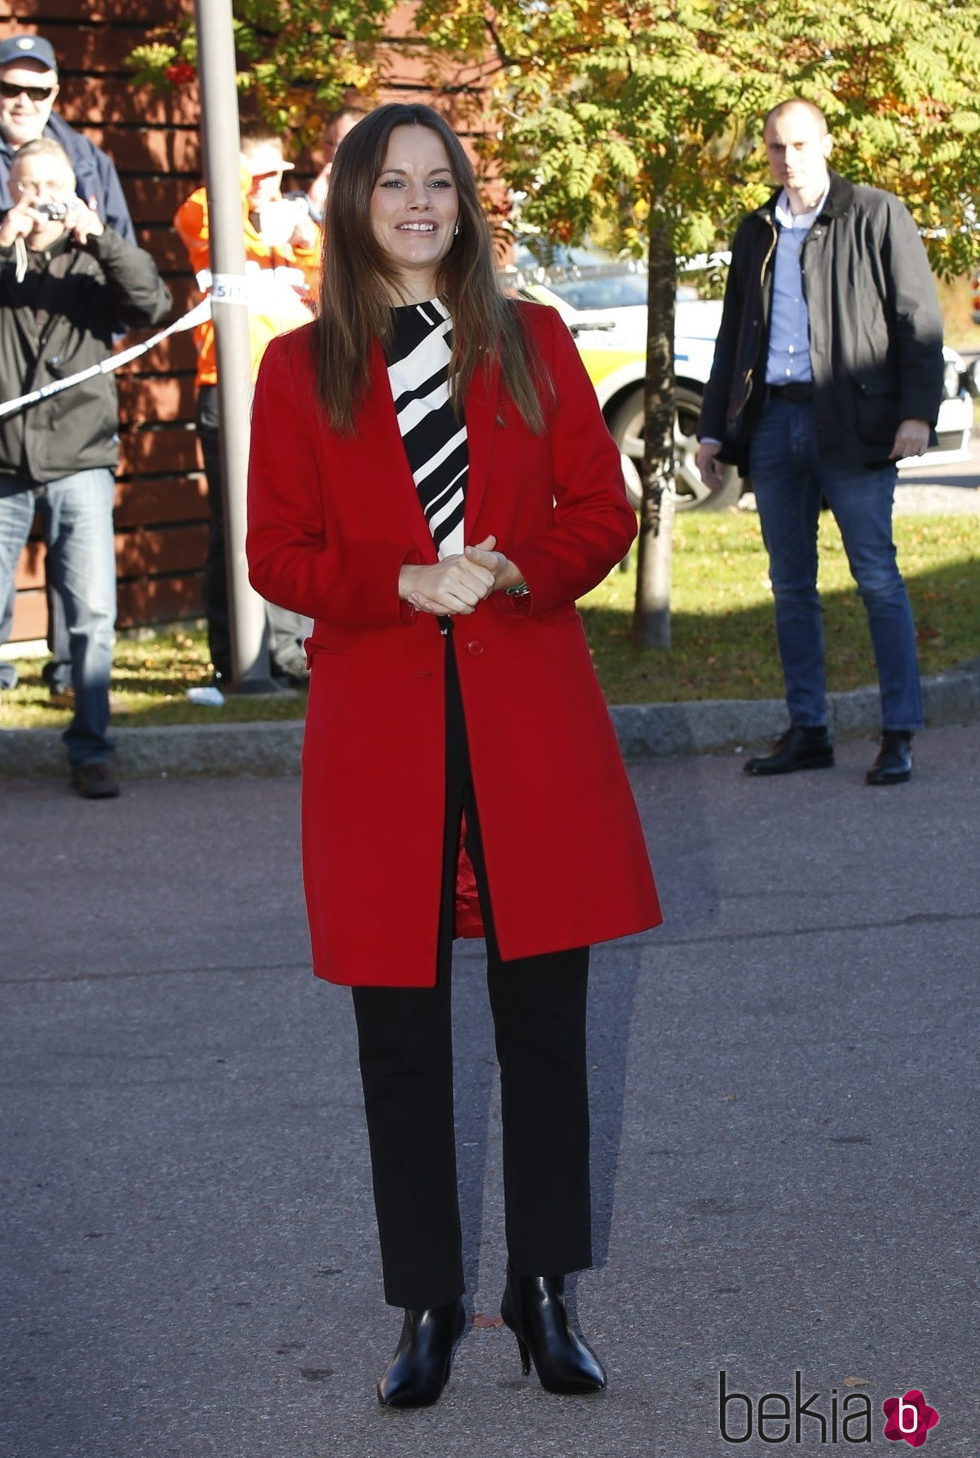 Sofia Hellqvist en su primera visita oficial a Dalarna como Princesa de Suecia